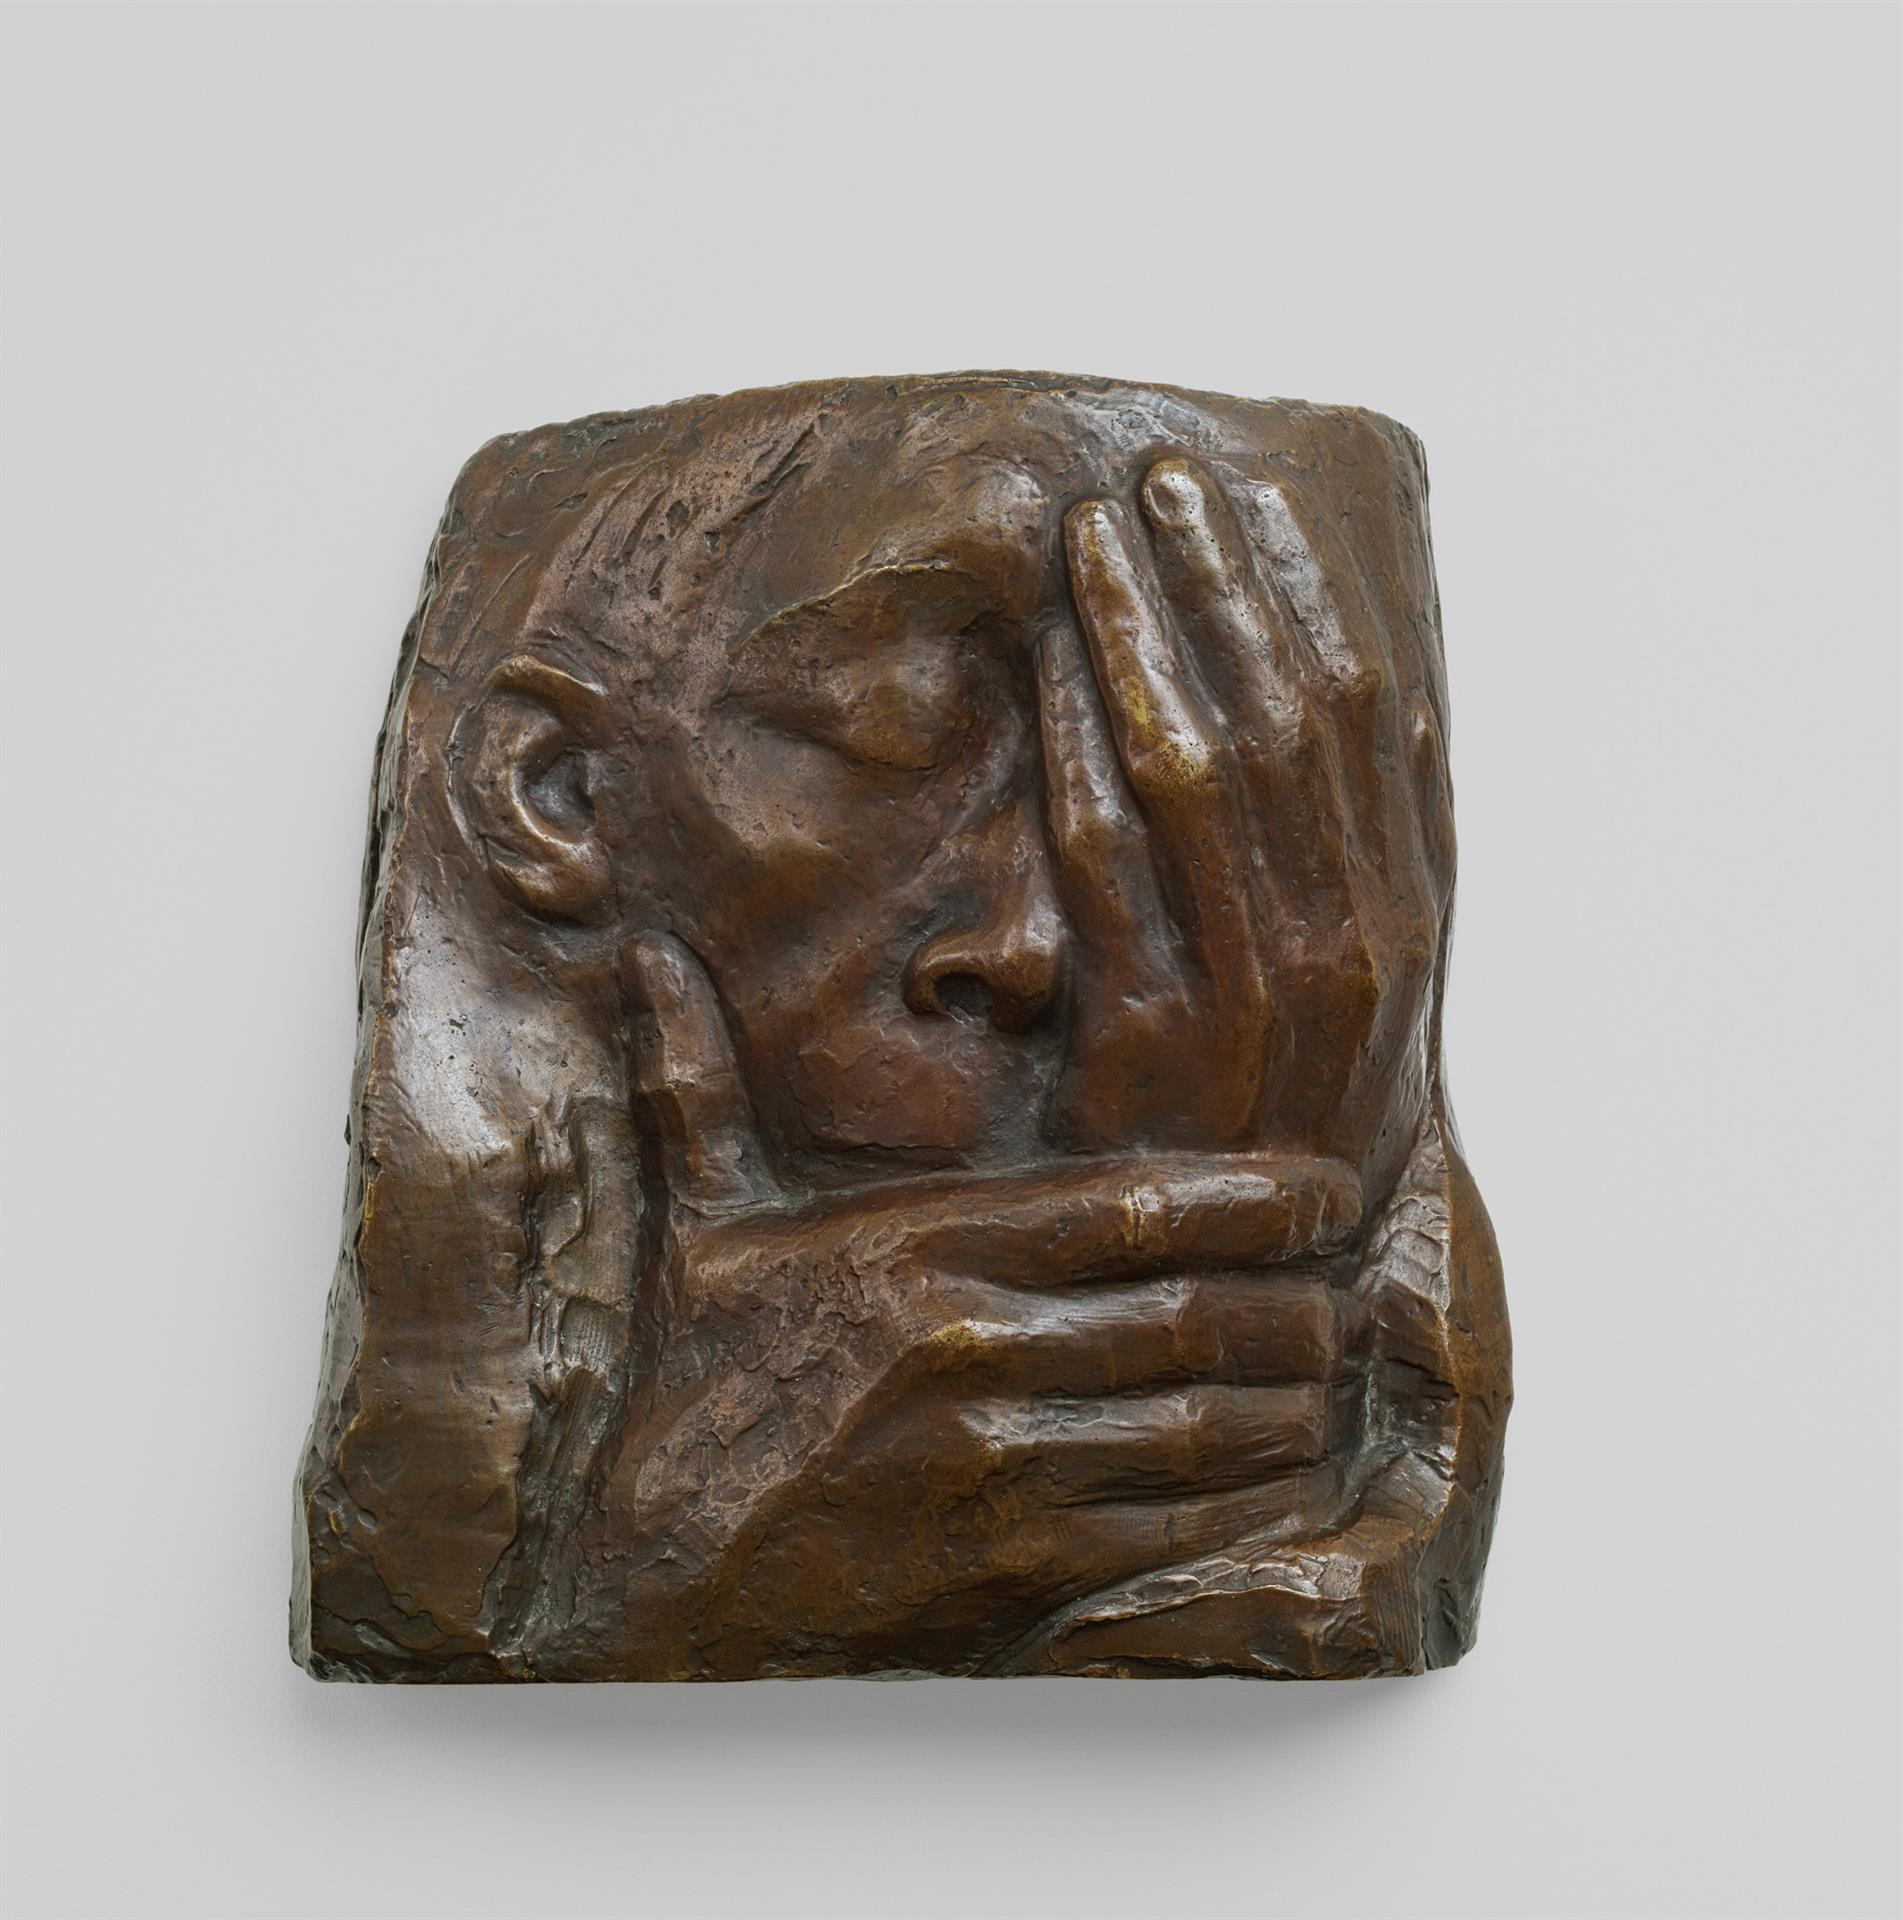 Käthe Kollwitz, Lamentation, 1938-1941, bronze, Seeler 38 I.B.3., Cologne Kollwitz Collection © Käthe Kollwitz Museum Köln